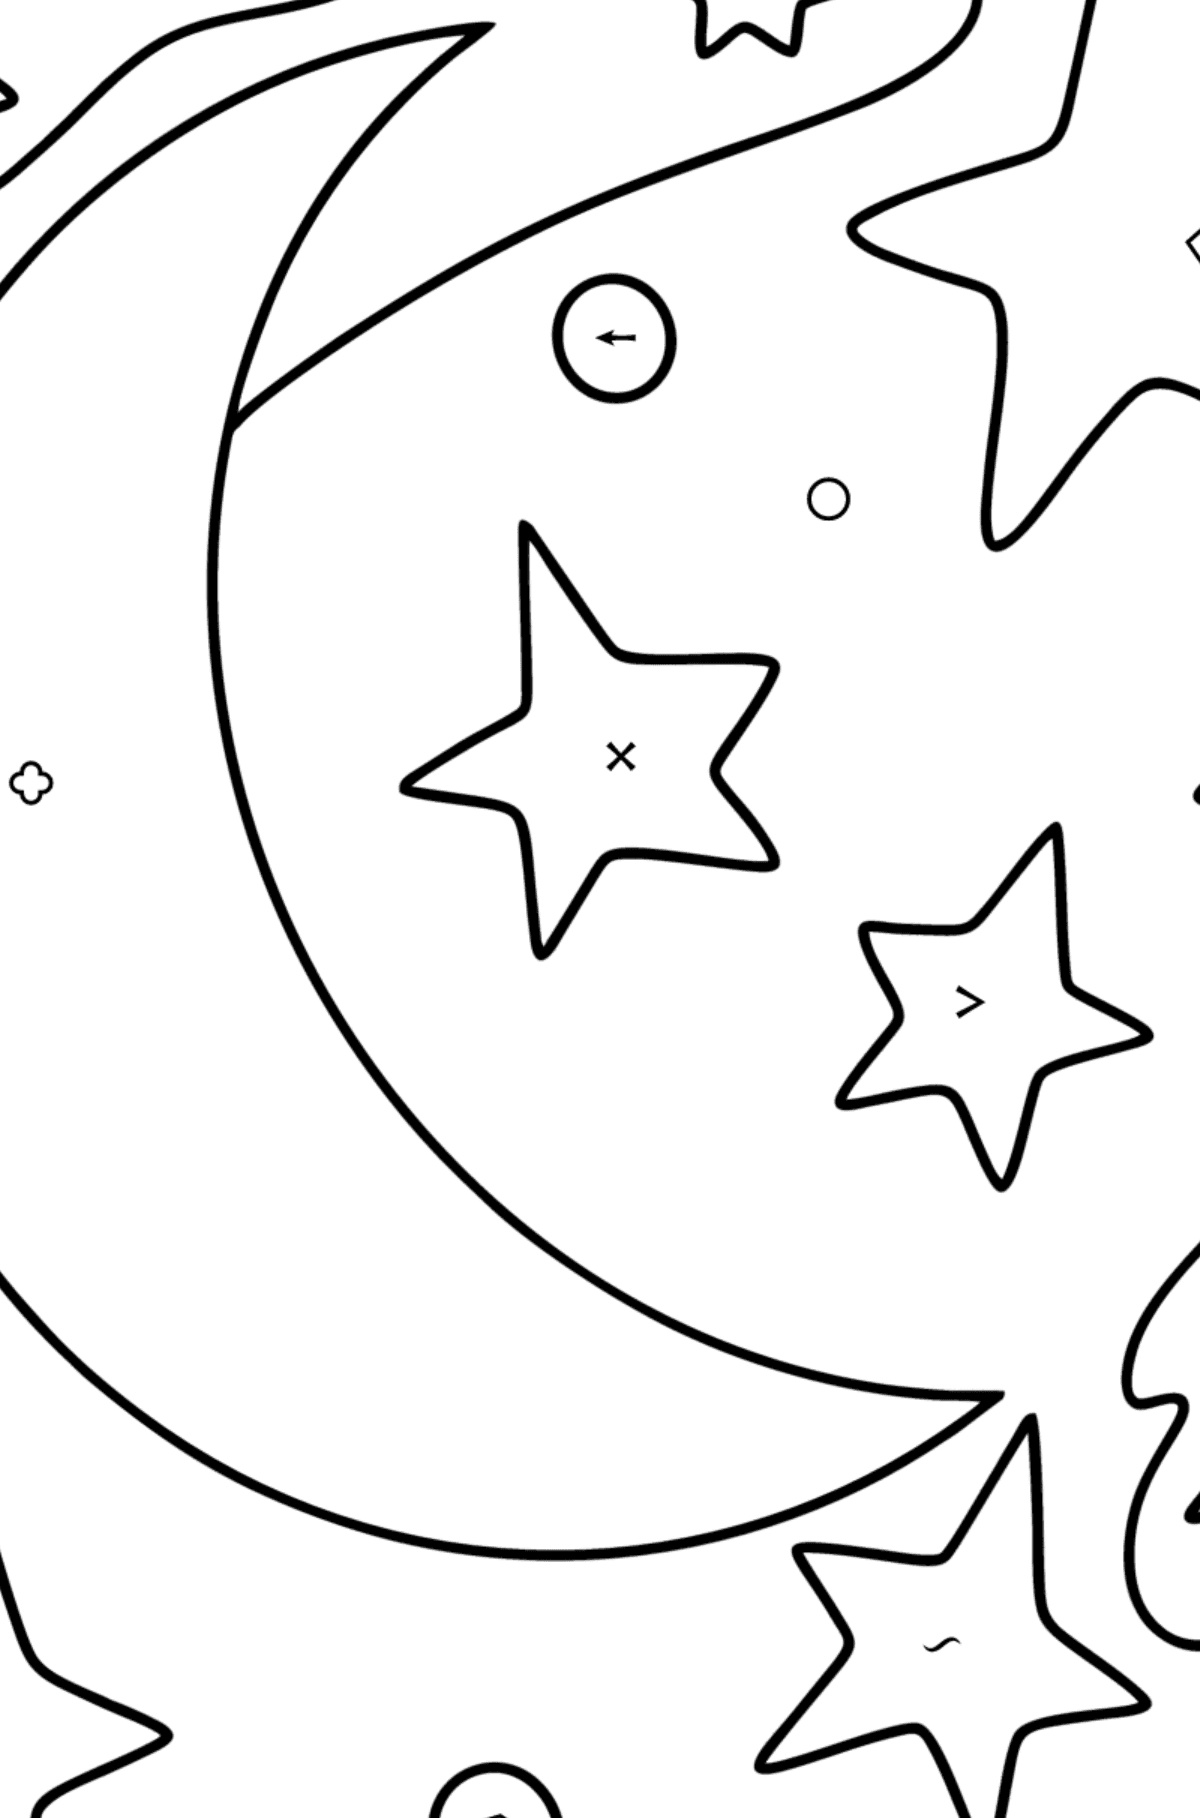 Kolorowanka księżyc i gwiazdy - Kolorowanie według symboli i figur geometrycznych dla dzieci